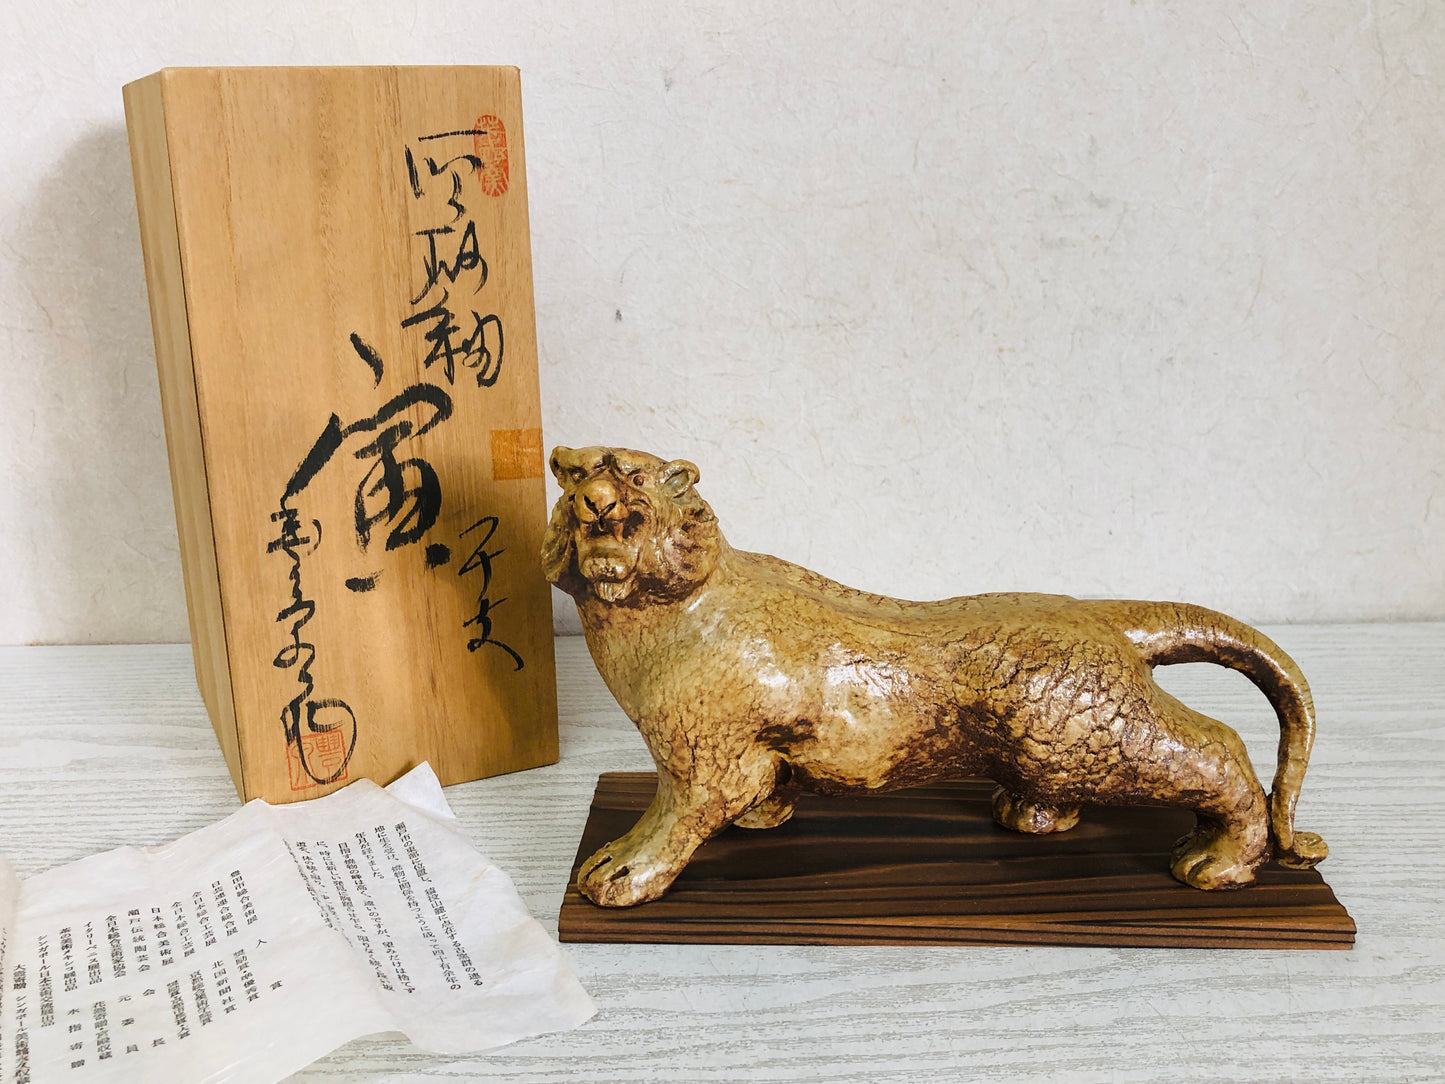 Y3619 OKIMONO Seto-ware Tiger figure signed box Japan antique interior decor